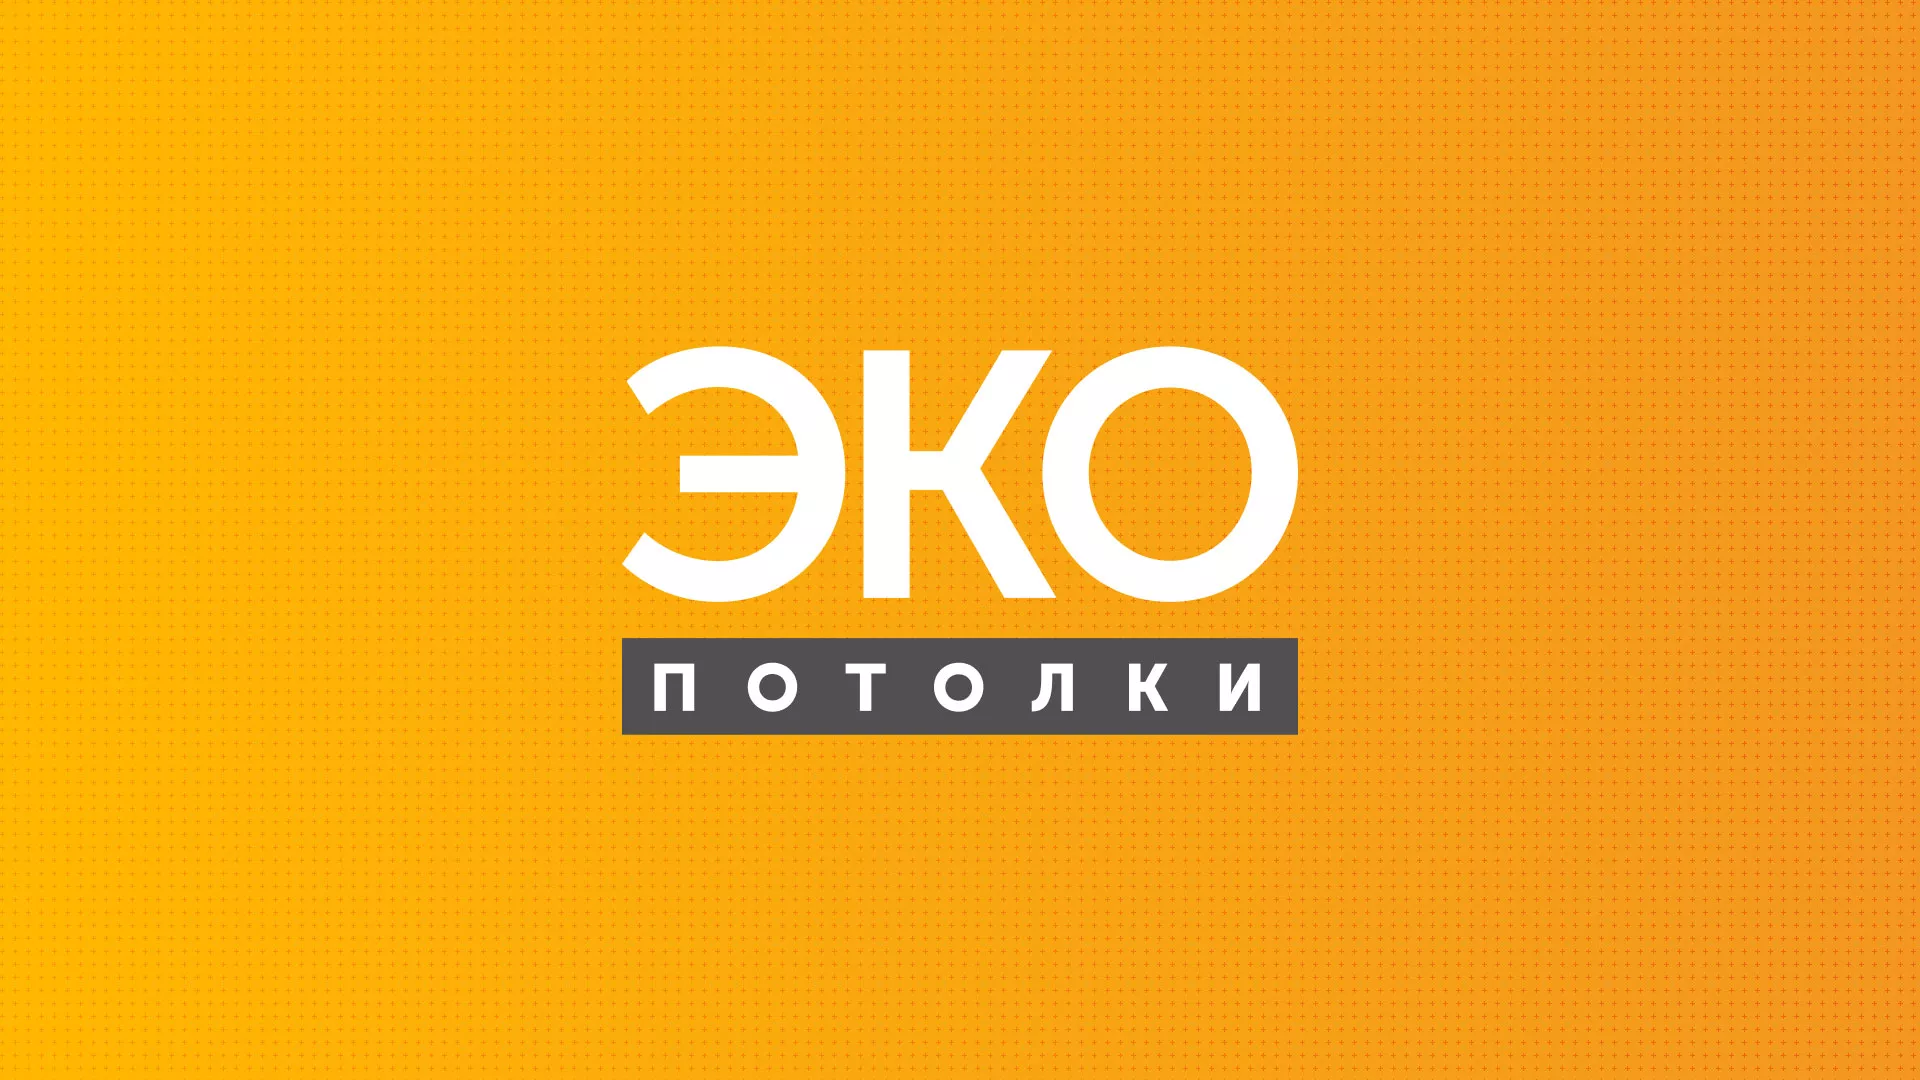 Разработка сайта по натяжным потолкам «Эко Потолки» в Петрове Вале